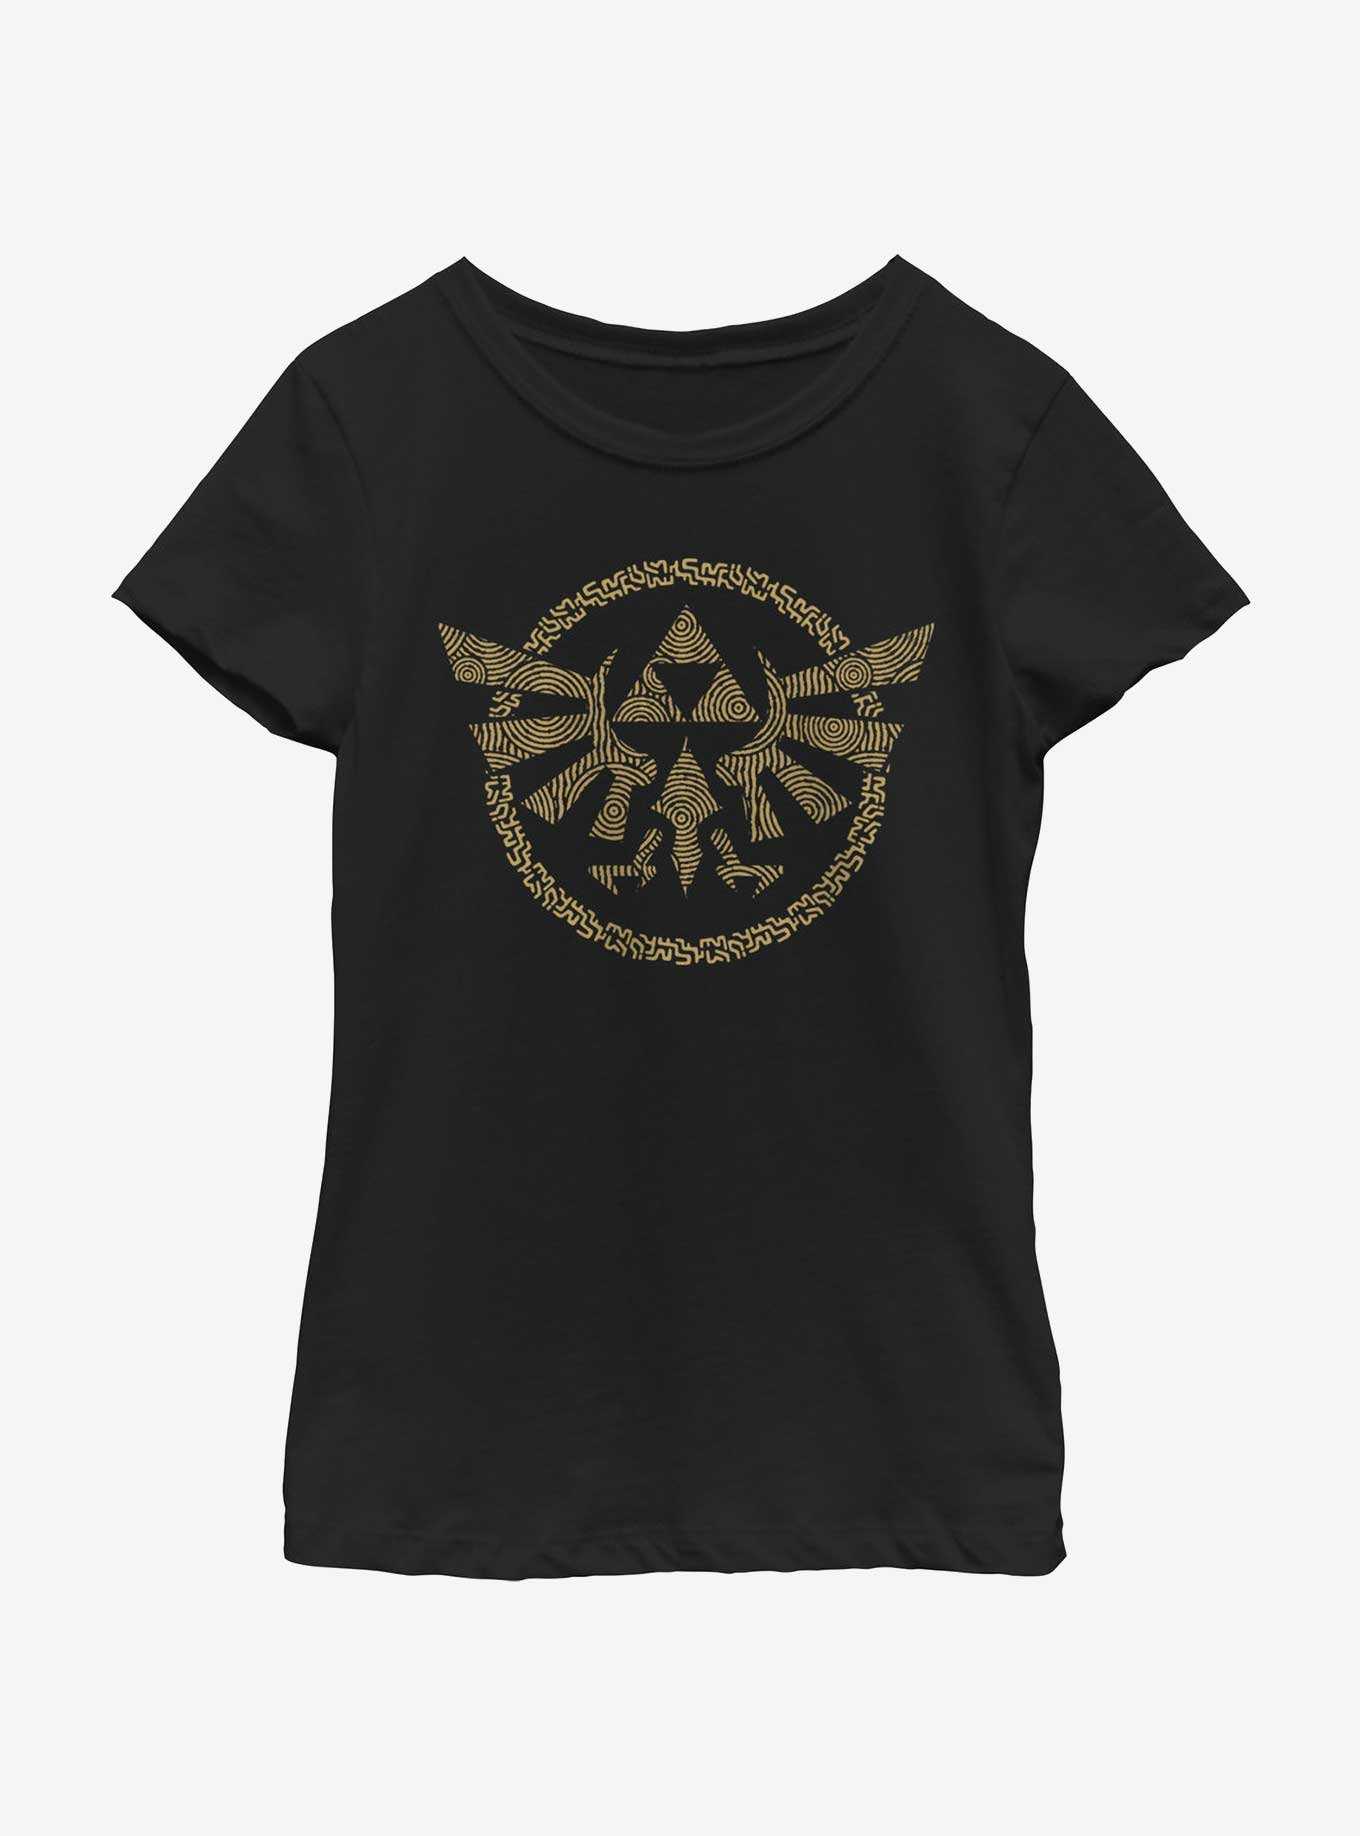 The Legend of Zelda Hyrule Crest Youth Girls T-Shirt, , hi-res